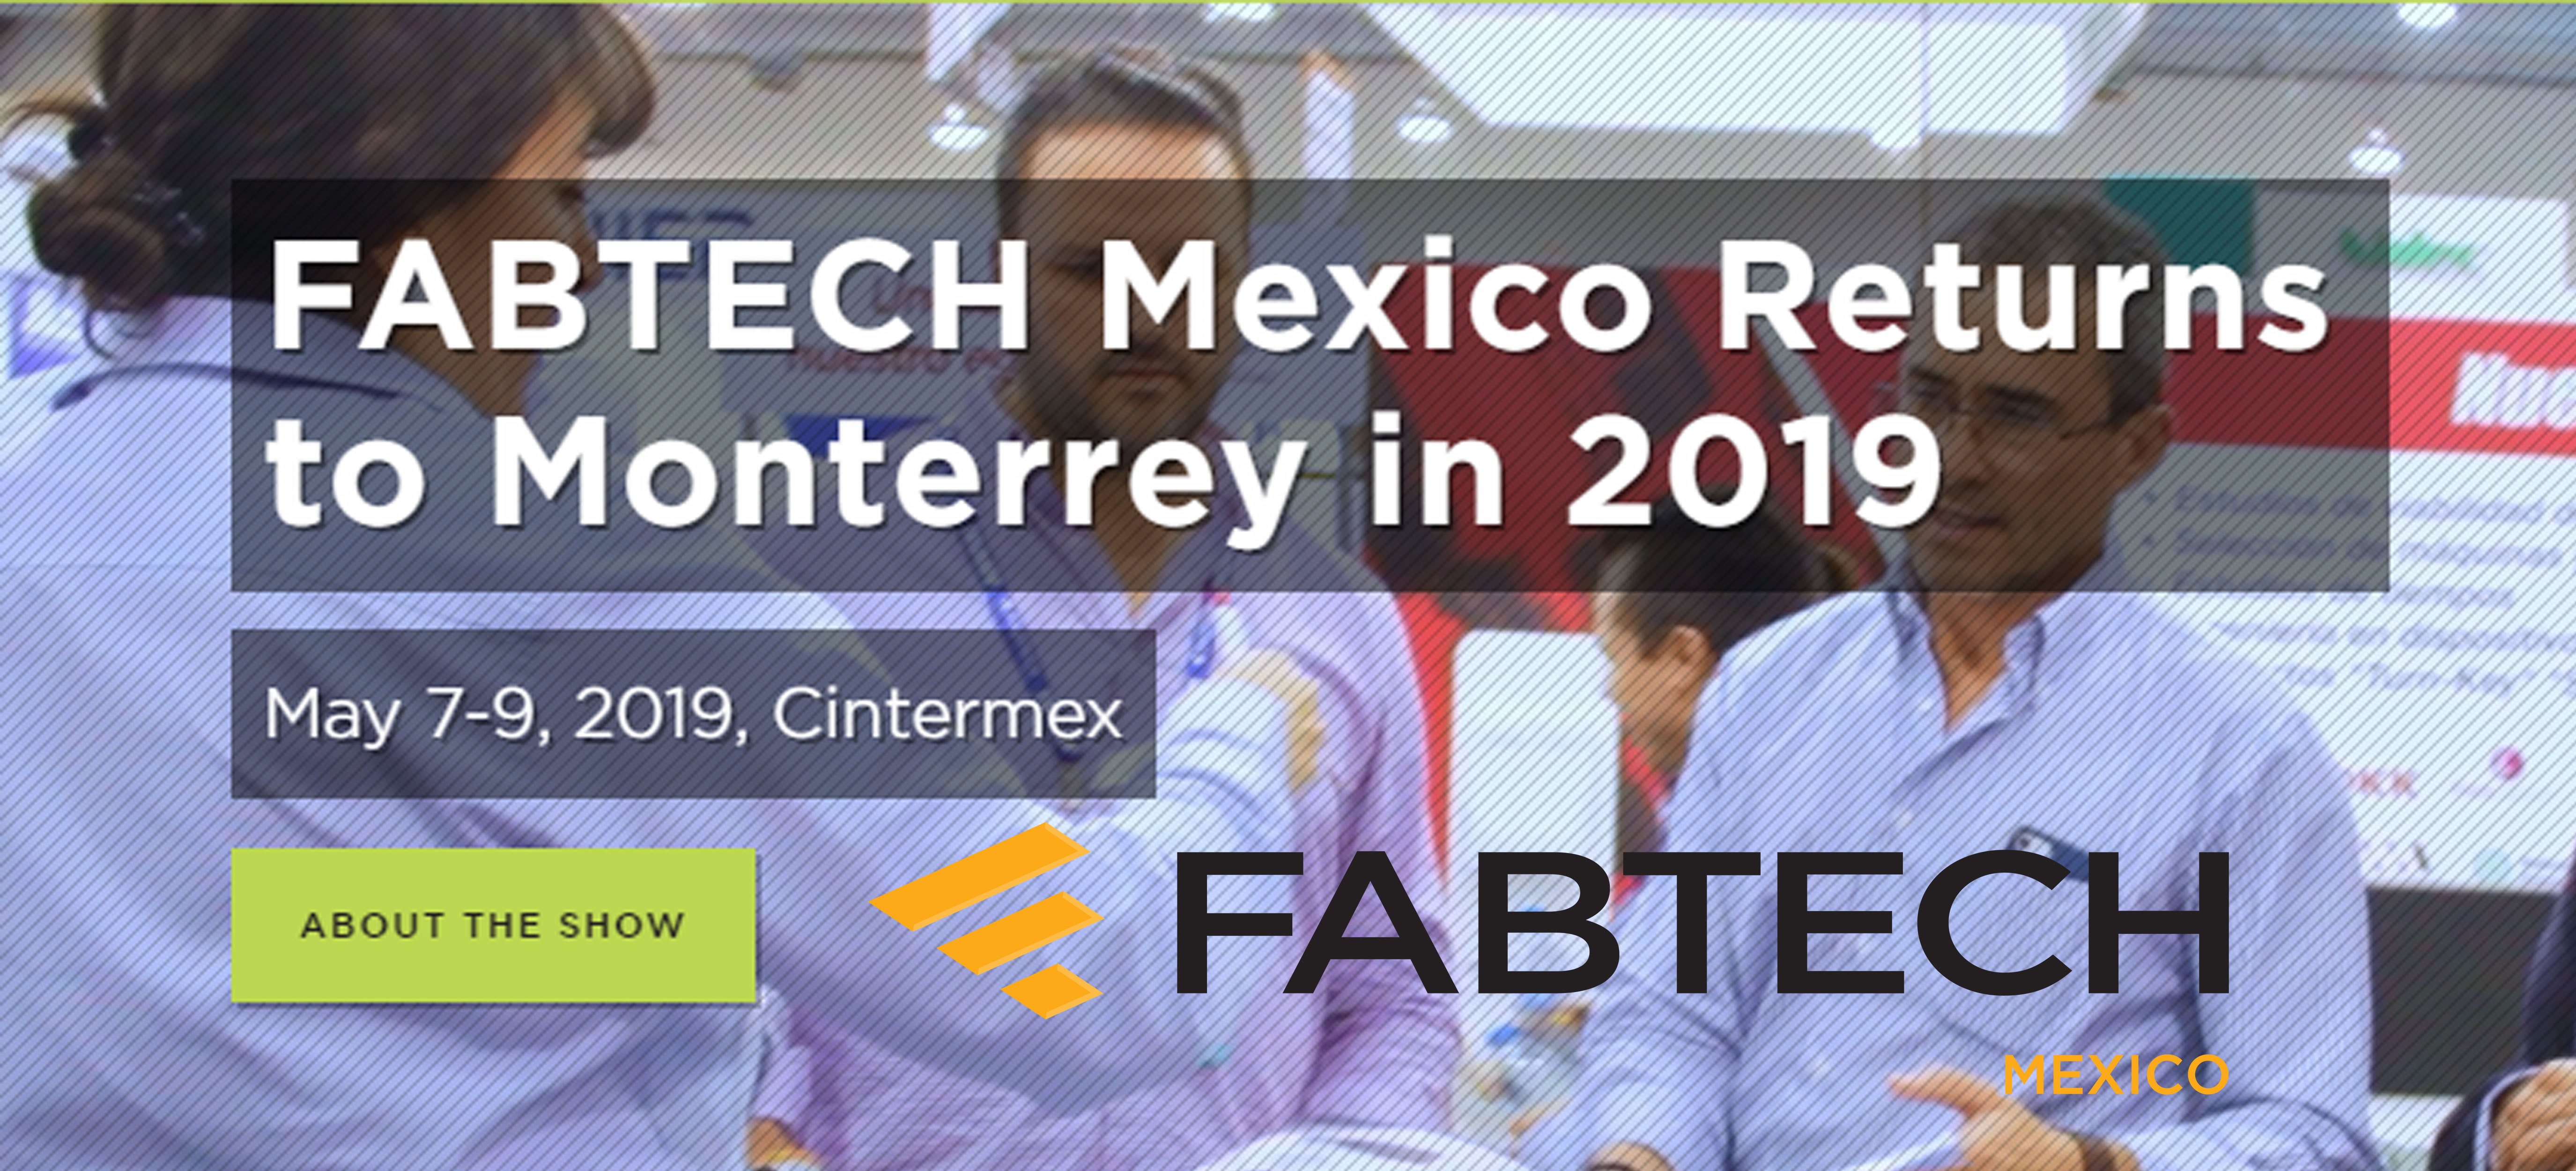 FABTECH Mexico 2019 491